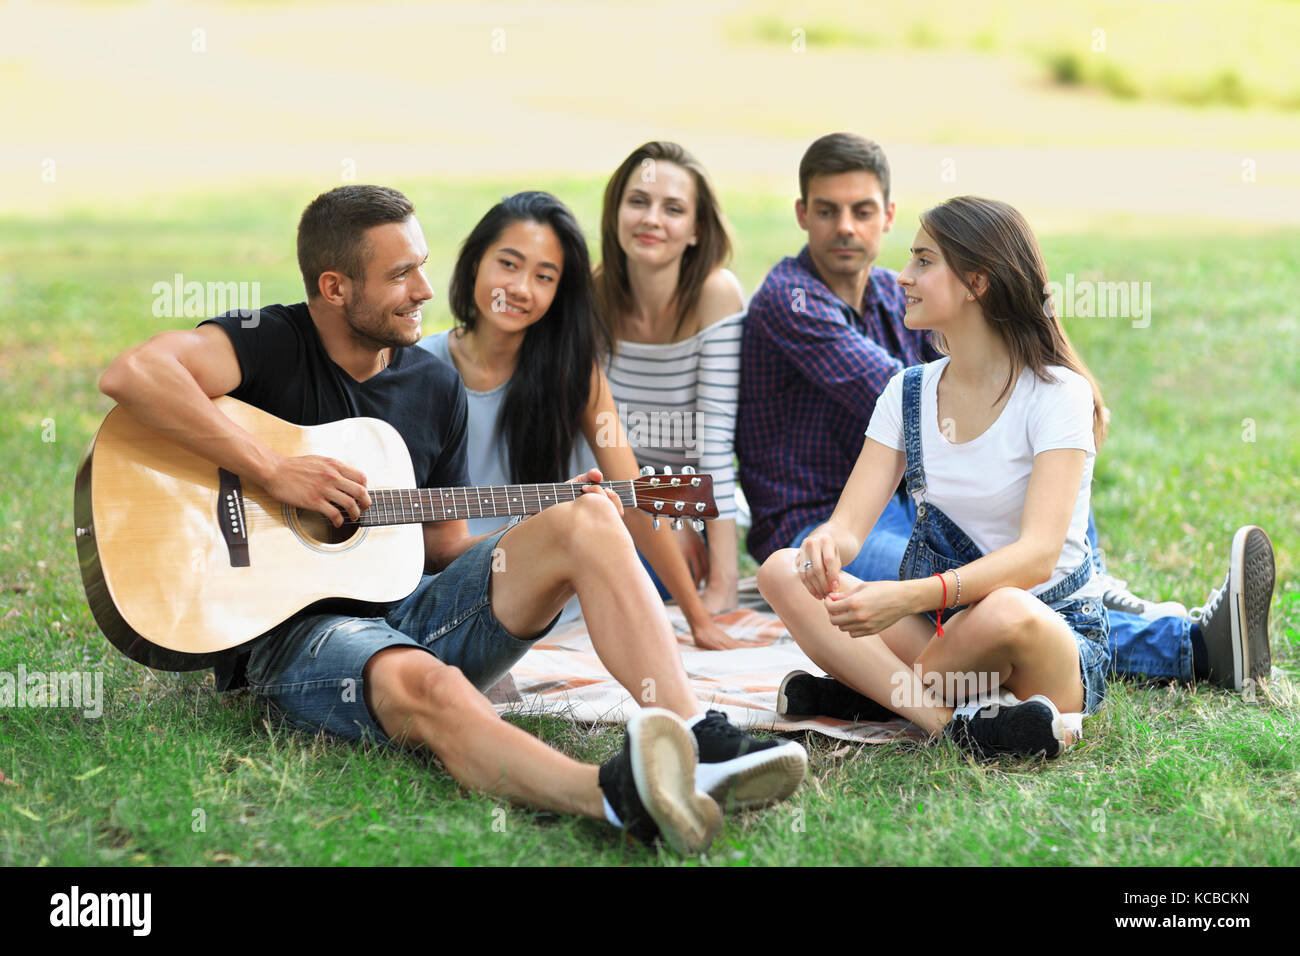 Eine Gruppe von Freunden im Park an einem sonnigen Tag ausruhen, Kerl Gitarre spielen und drei junge Frauen und ein Mann hören des Songs und lächelnd. Menschen havi Stockfoto